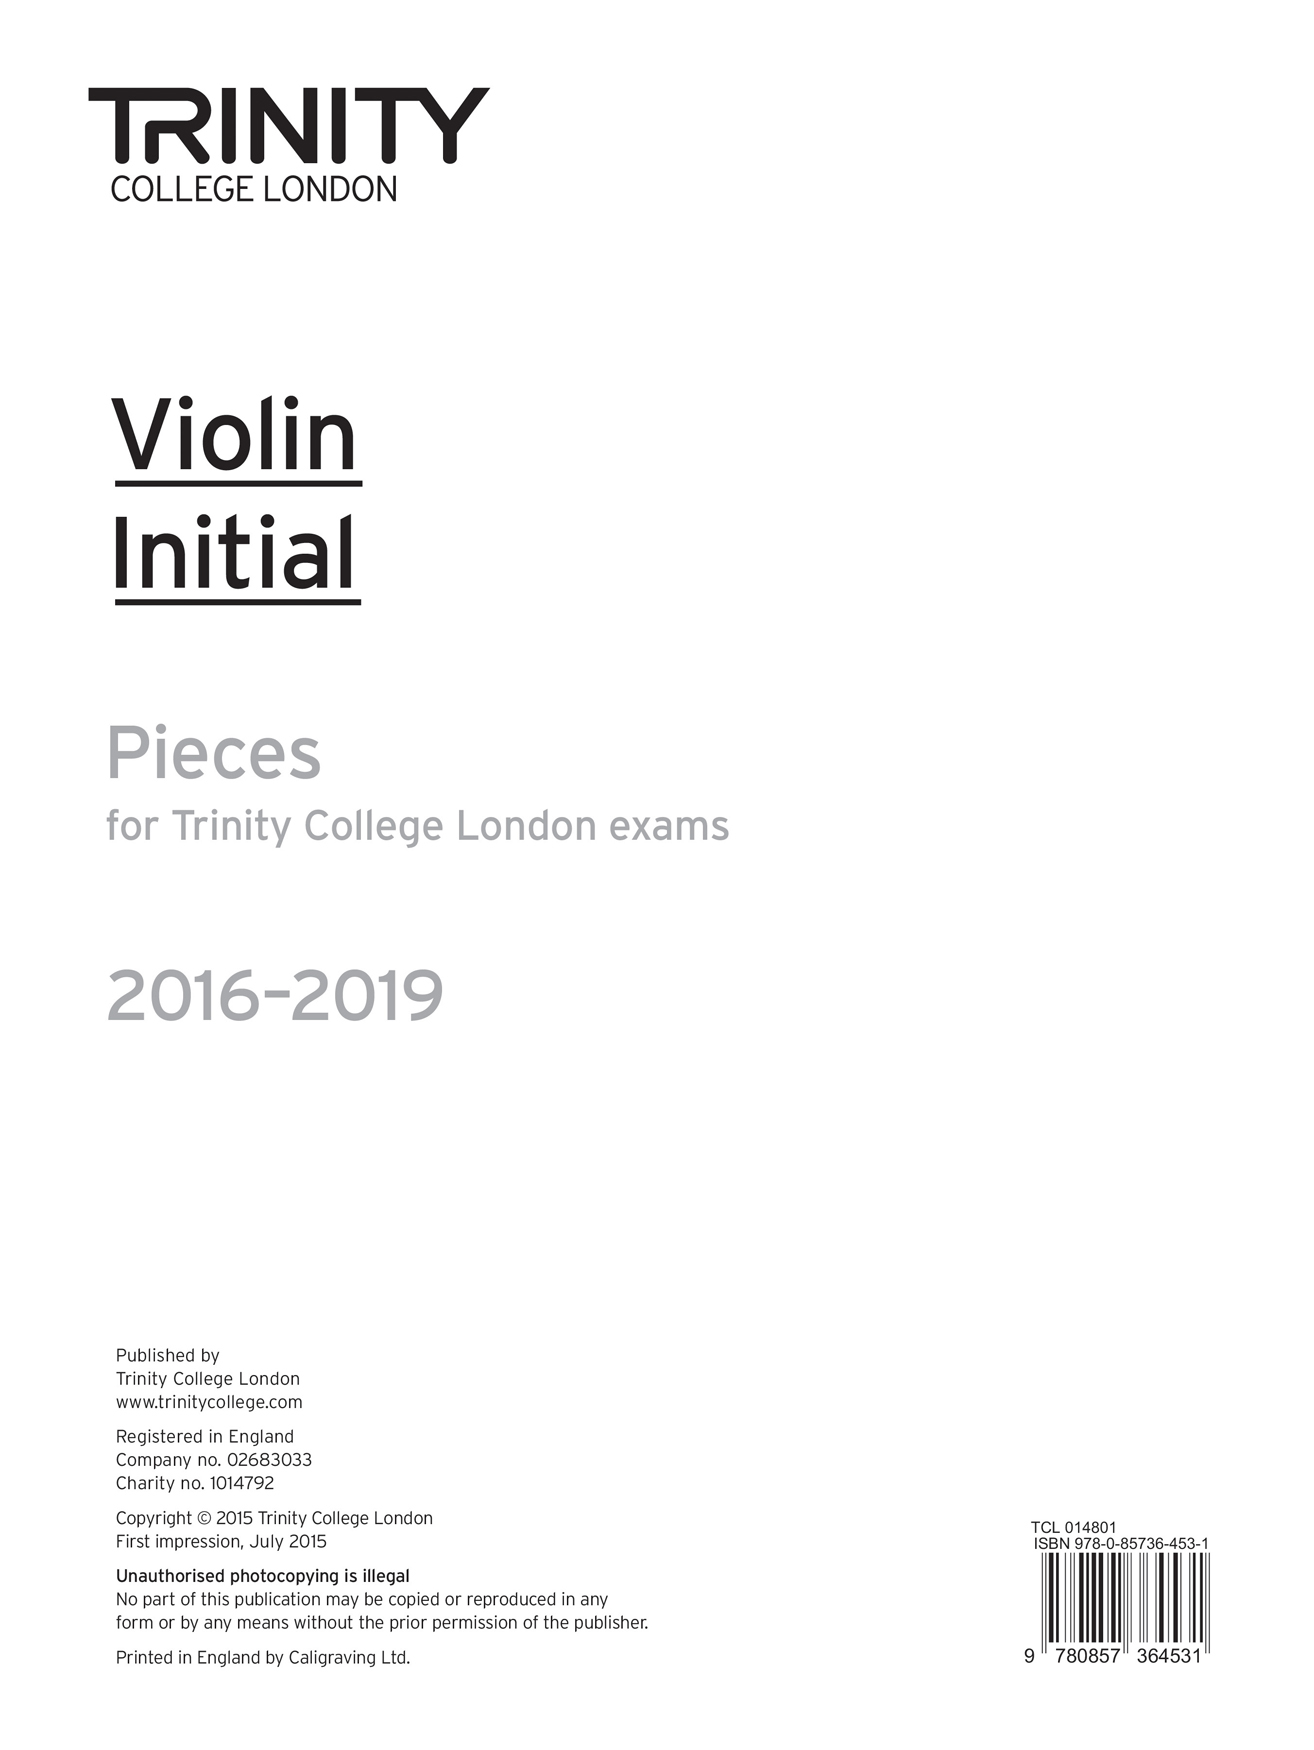 Violin Exam Pieces - Initial: Violin: Parts